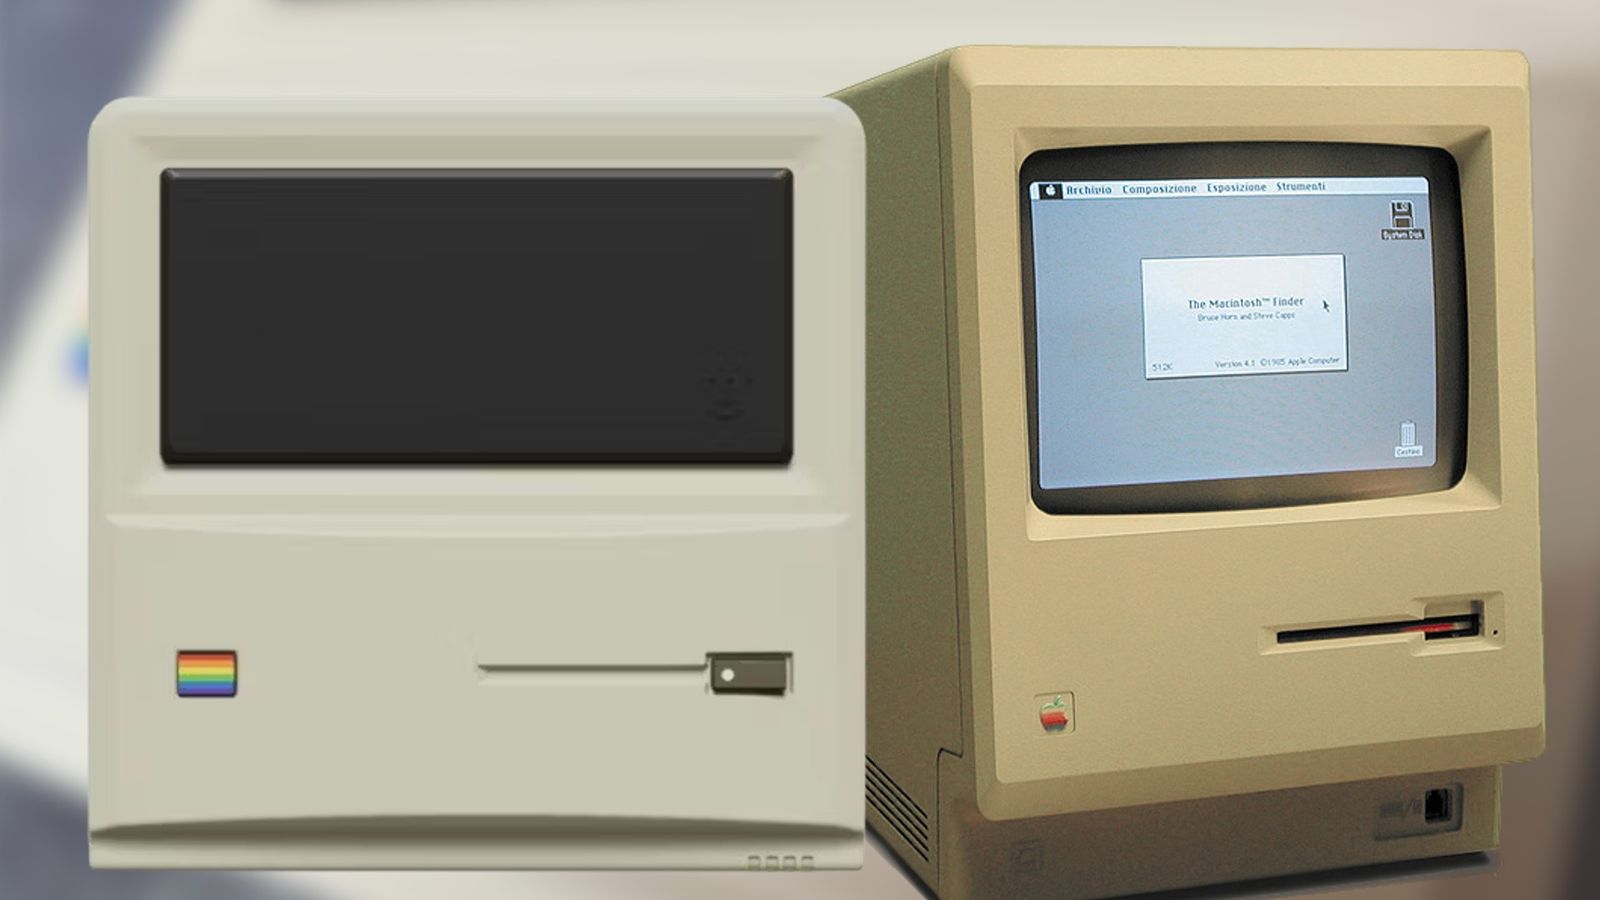 The AYANEO Retro Mini-PC next to the original Apple Macintosh